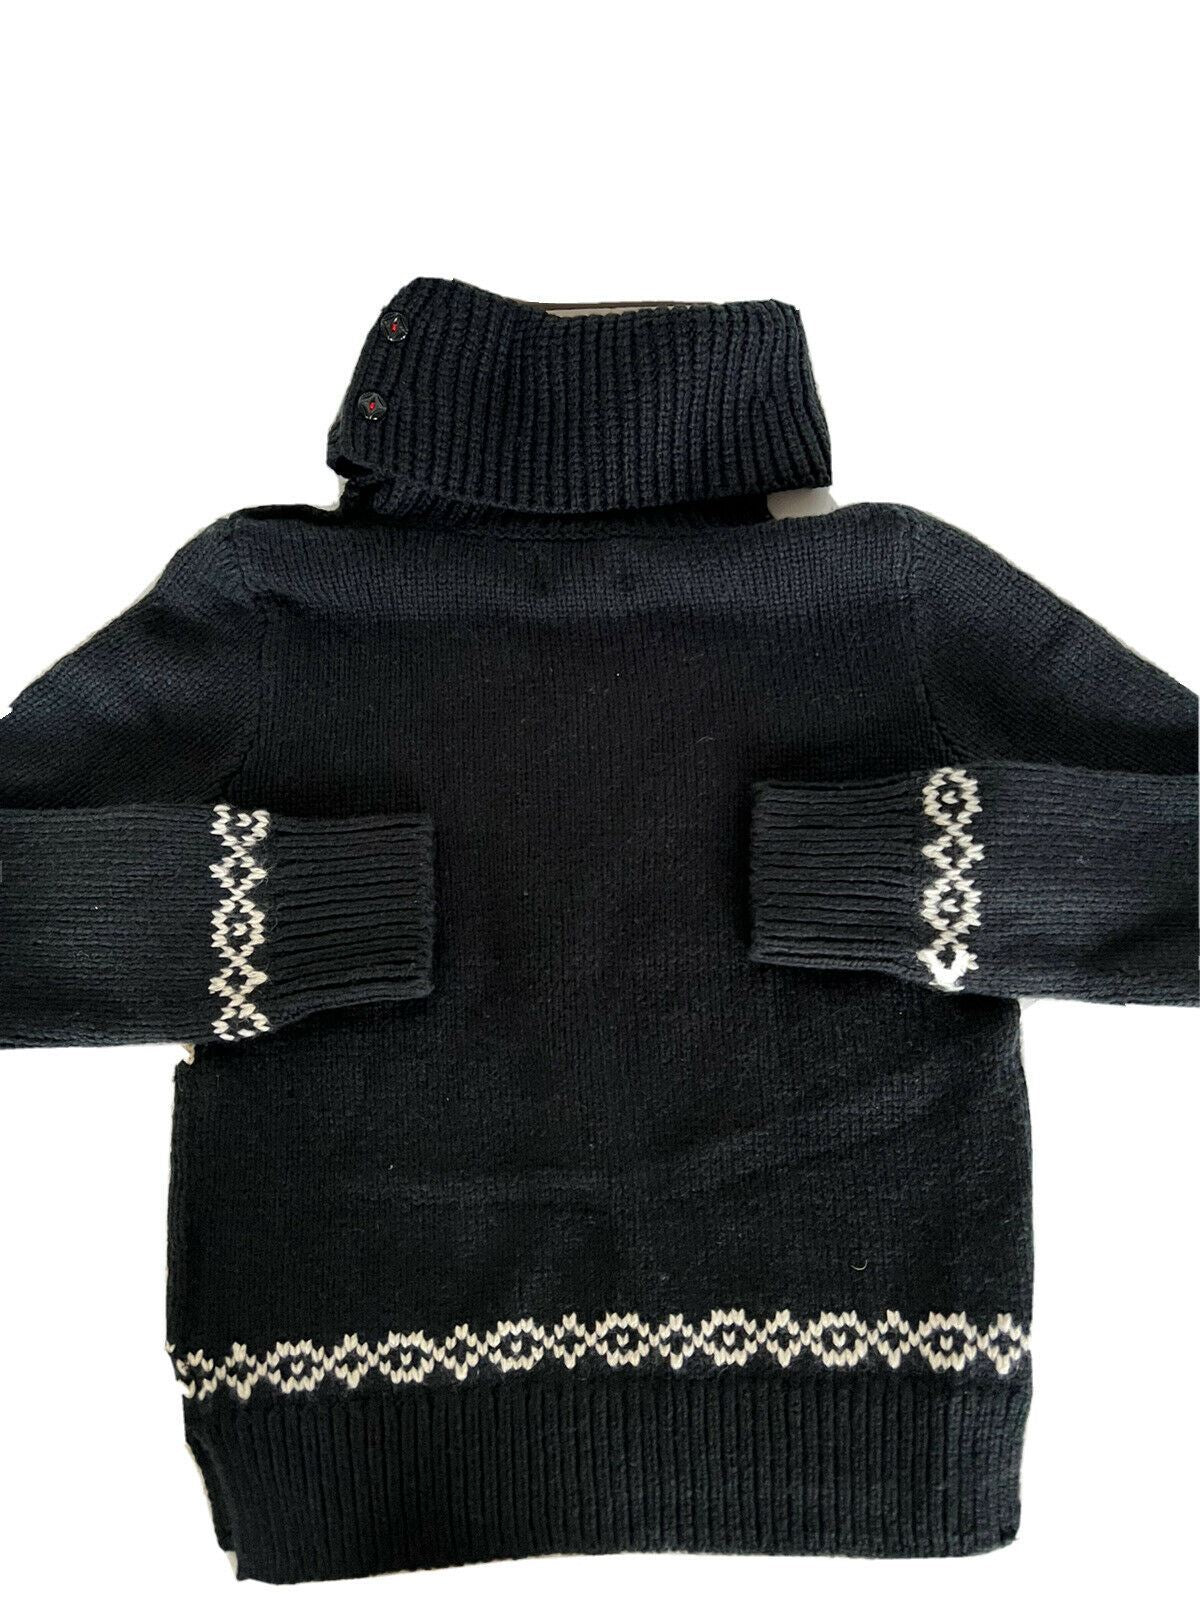 СЗТ $145 Polo Ralph Lauren для девочек, черный снежный мягкий свитер, размер S (7)